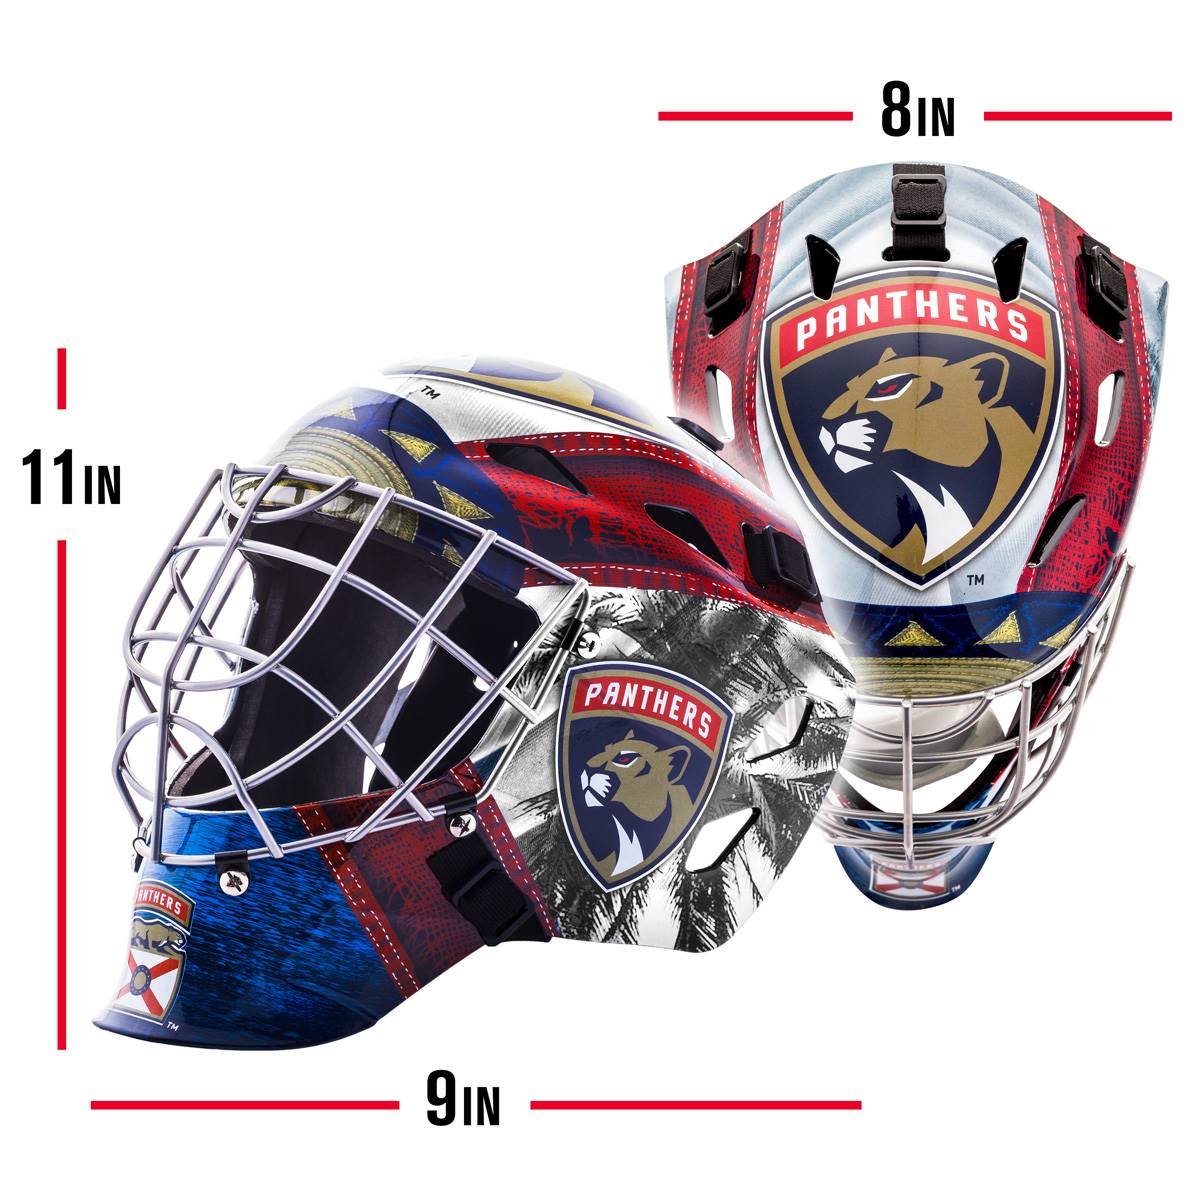 Franklin(R) GFM 1500 NHL Panthers Goalie Face Mask